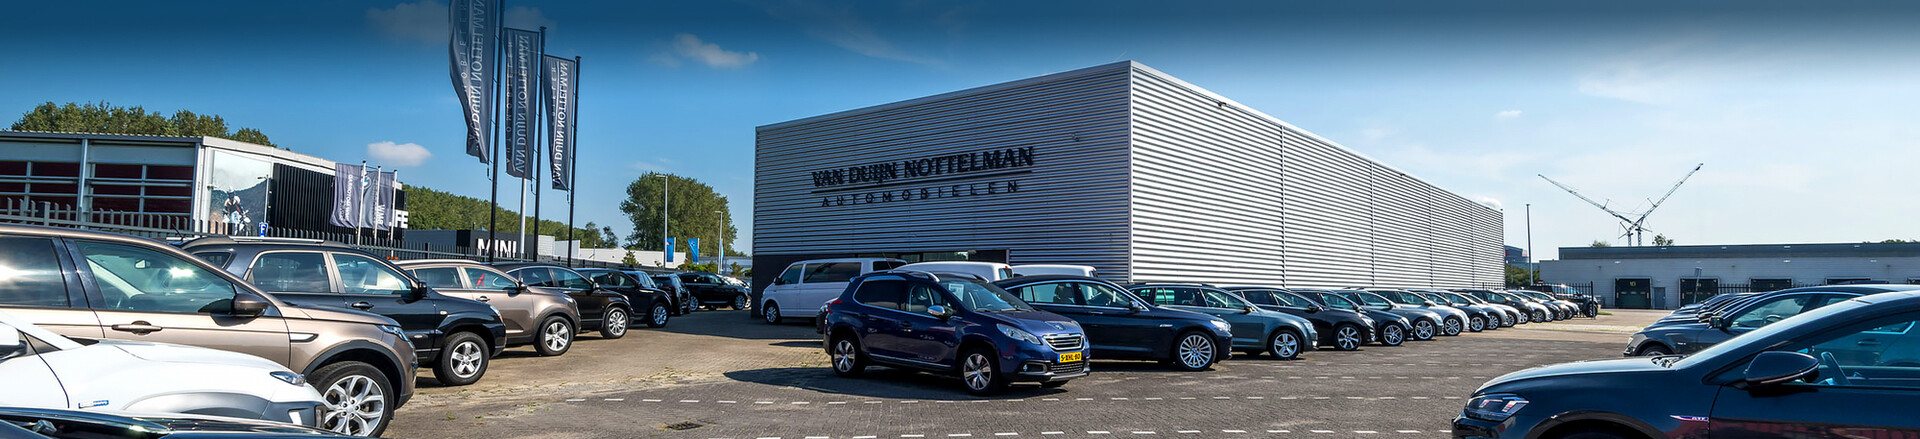 About Van Duijn Nottelman Automobielen